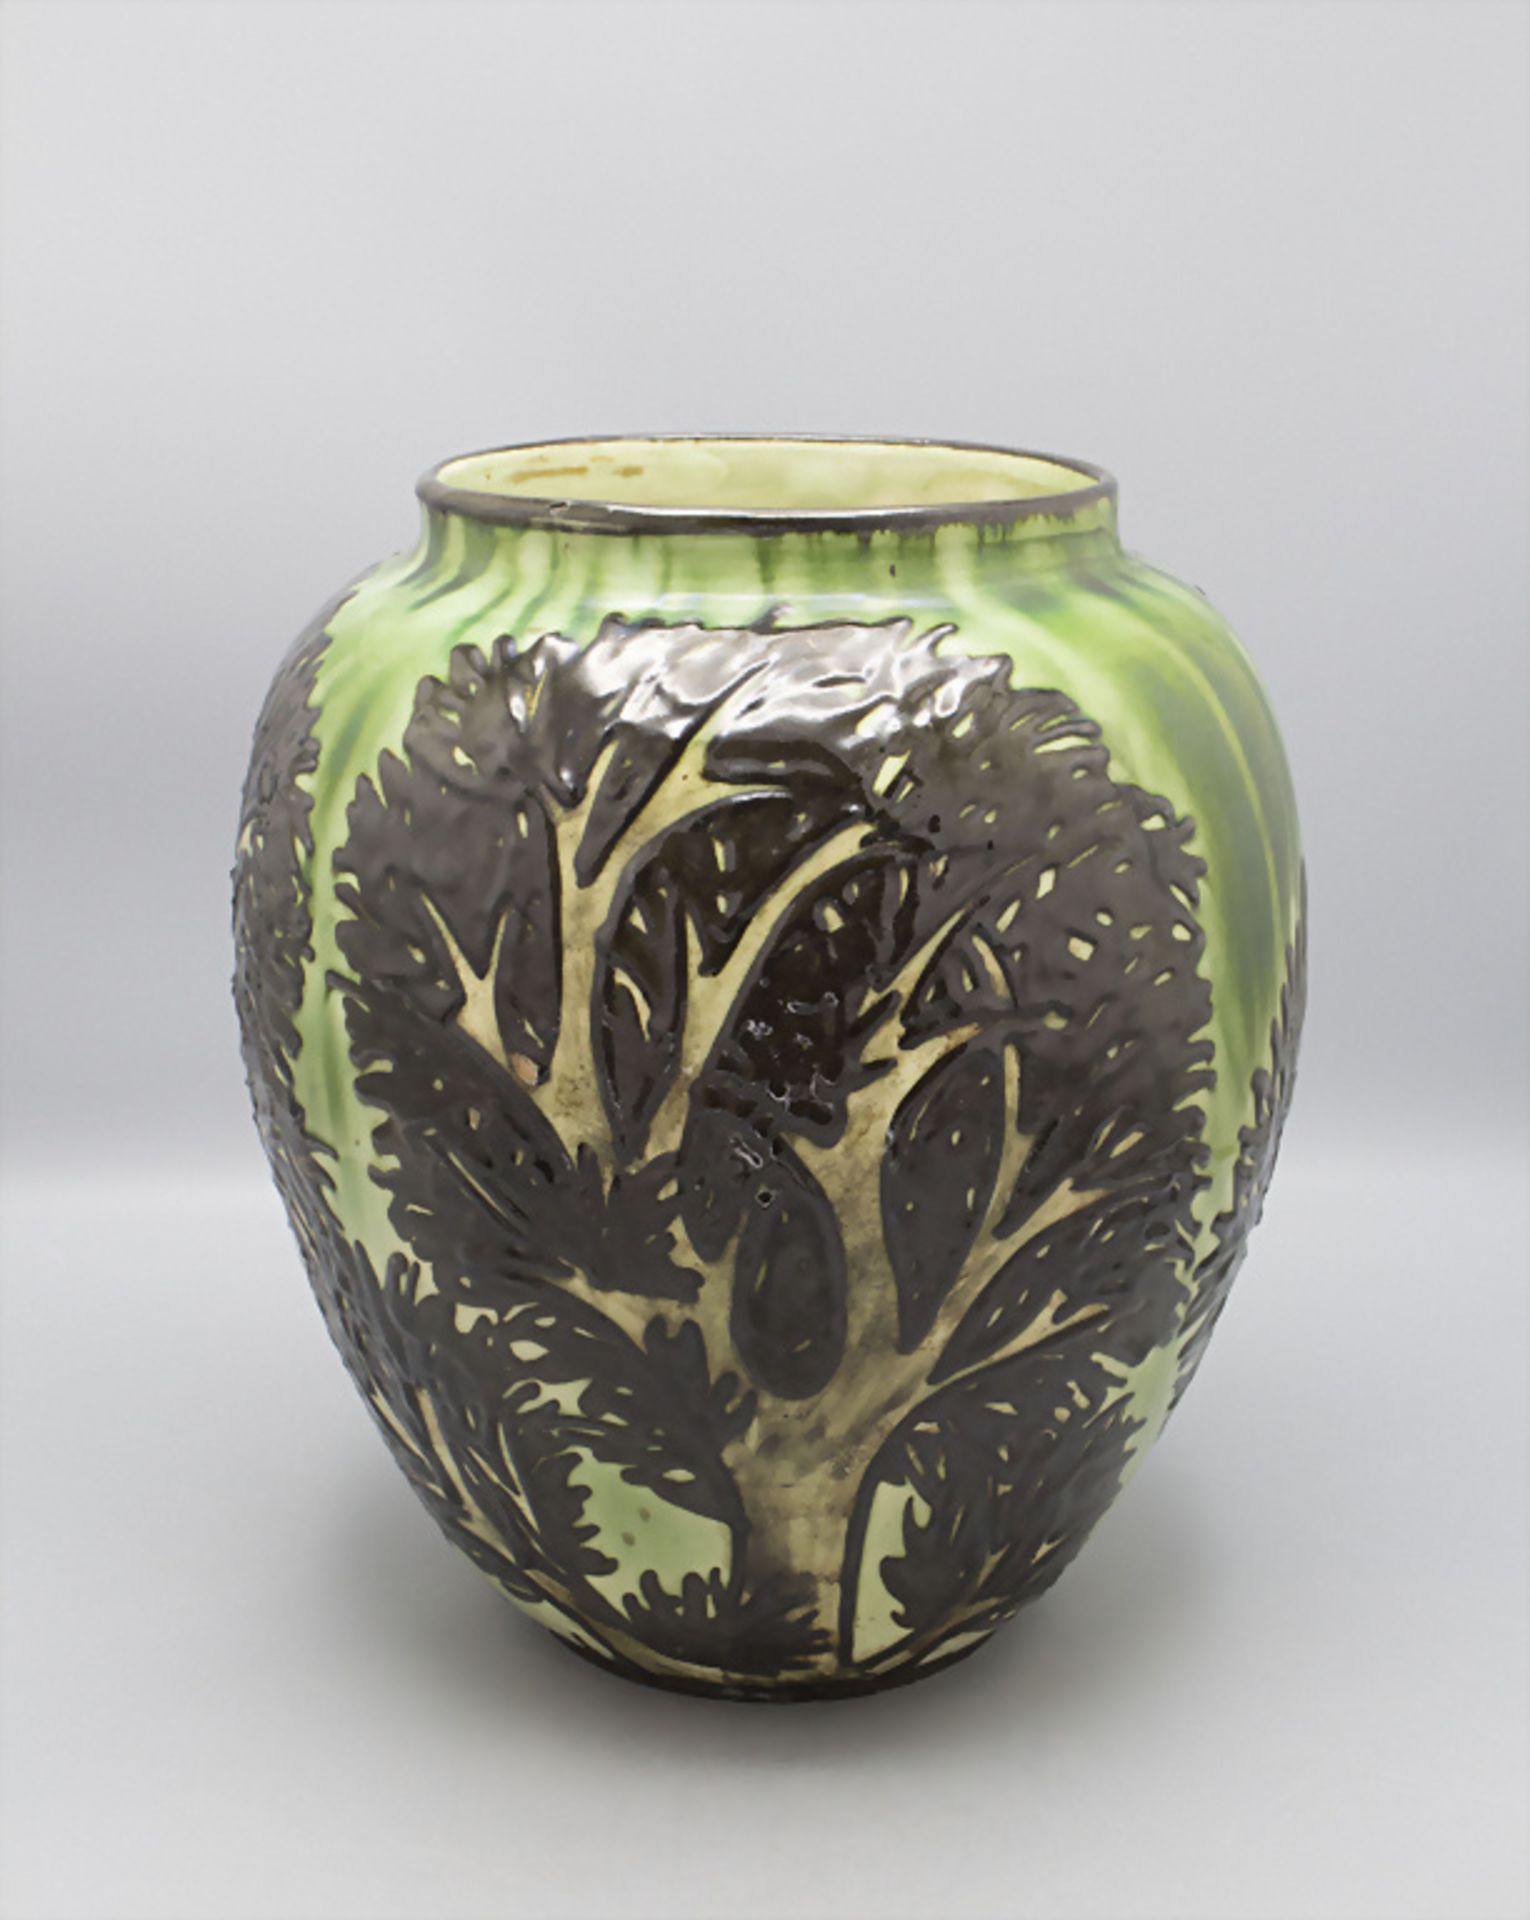 Jugendstil Majolika Vase 'Bäume' / An Art Nouveau majolica vase 'Trees', Max Laeuger, ... - Bild 2 aus 6